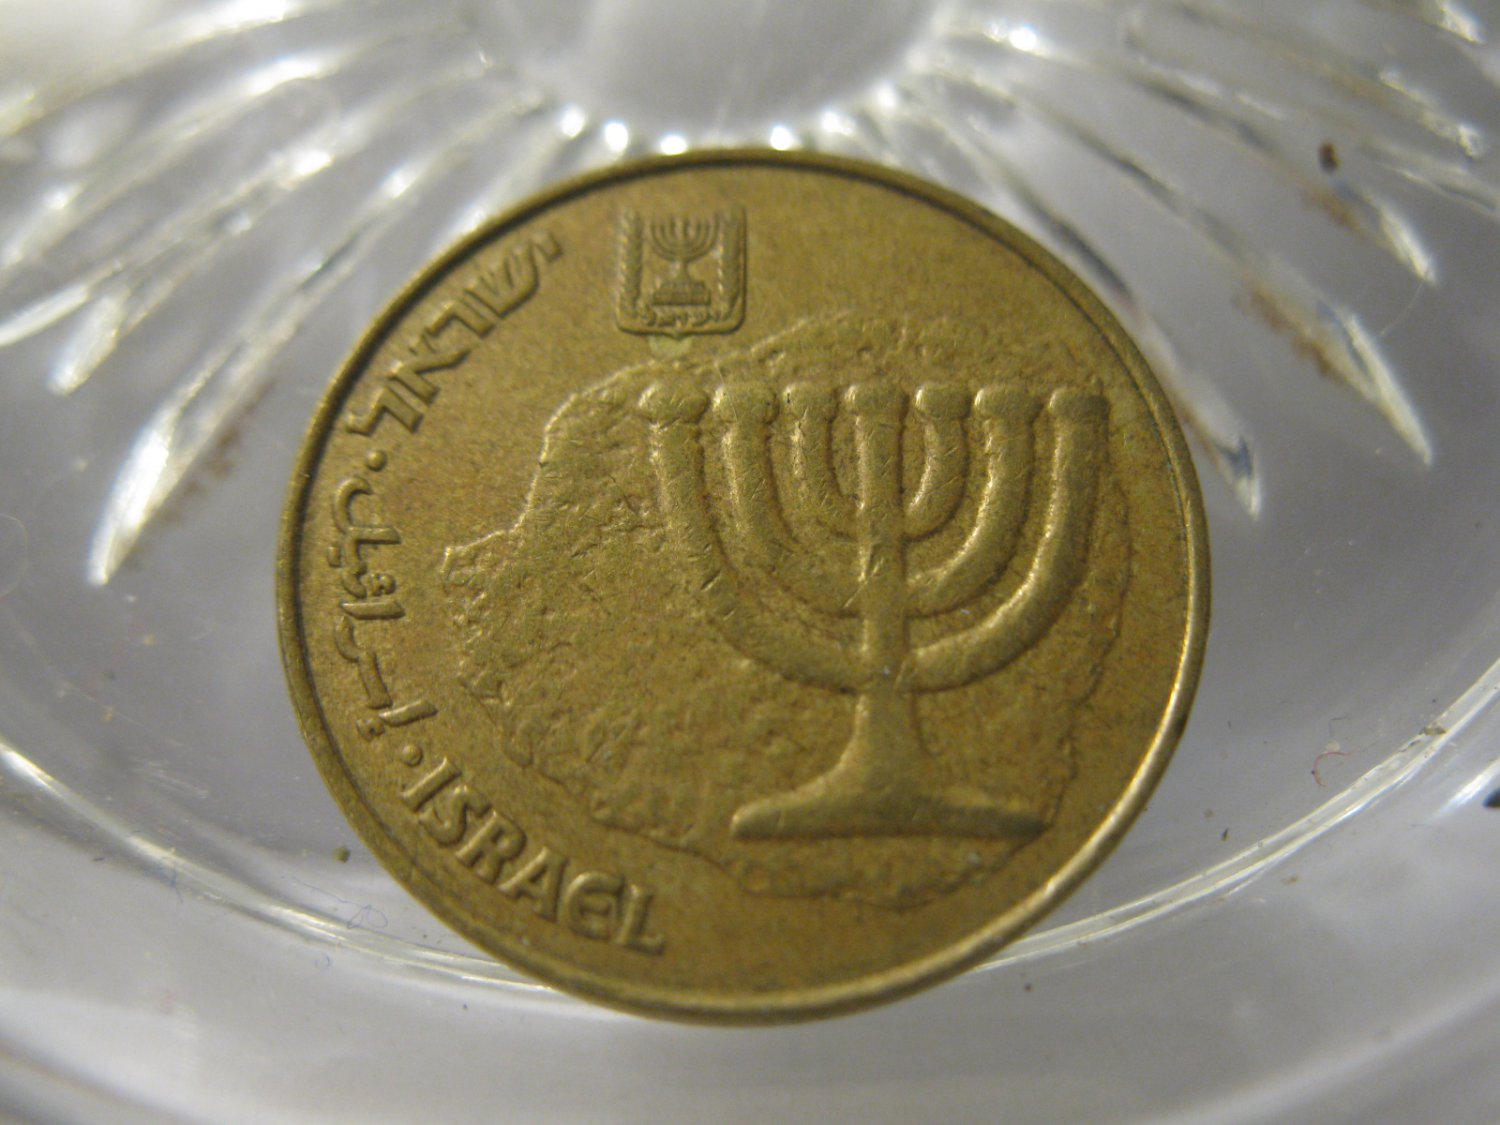 (FC-271) 1990 Israel: 10 Agorot - Hanukkah